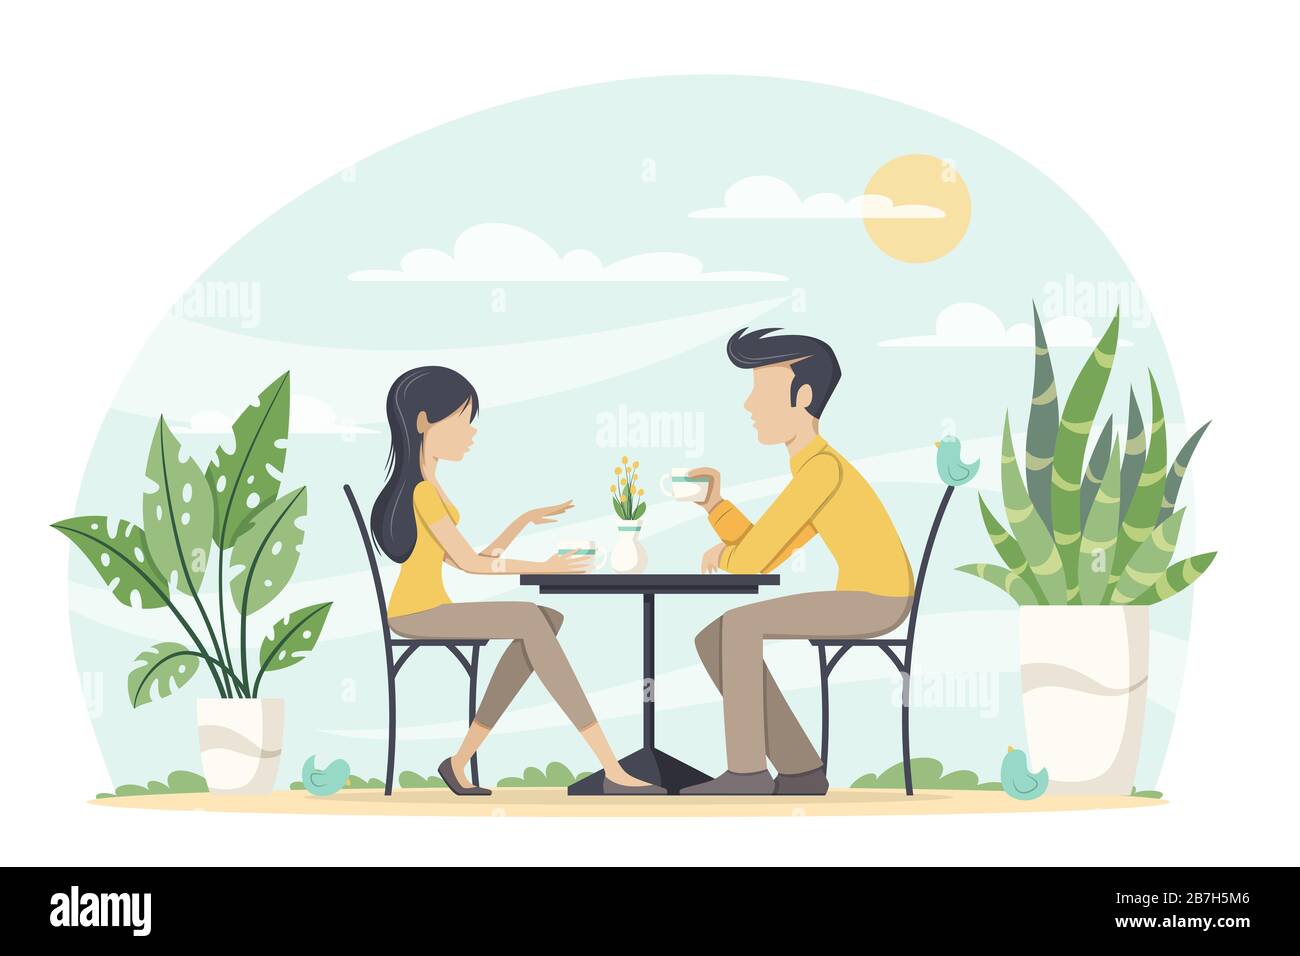 L'homme et la femme boivent du café à l'extérieur. Concept plat moderne pour l'espace de travail, le Web, l'arrière-plan et les modèles. Illustration vectorielle avec calques séparés. Illustration de Vecteur